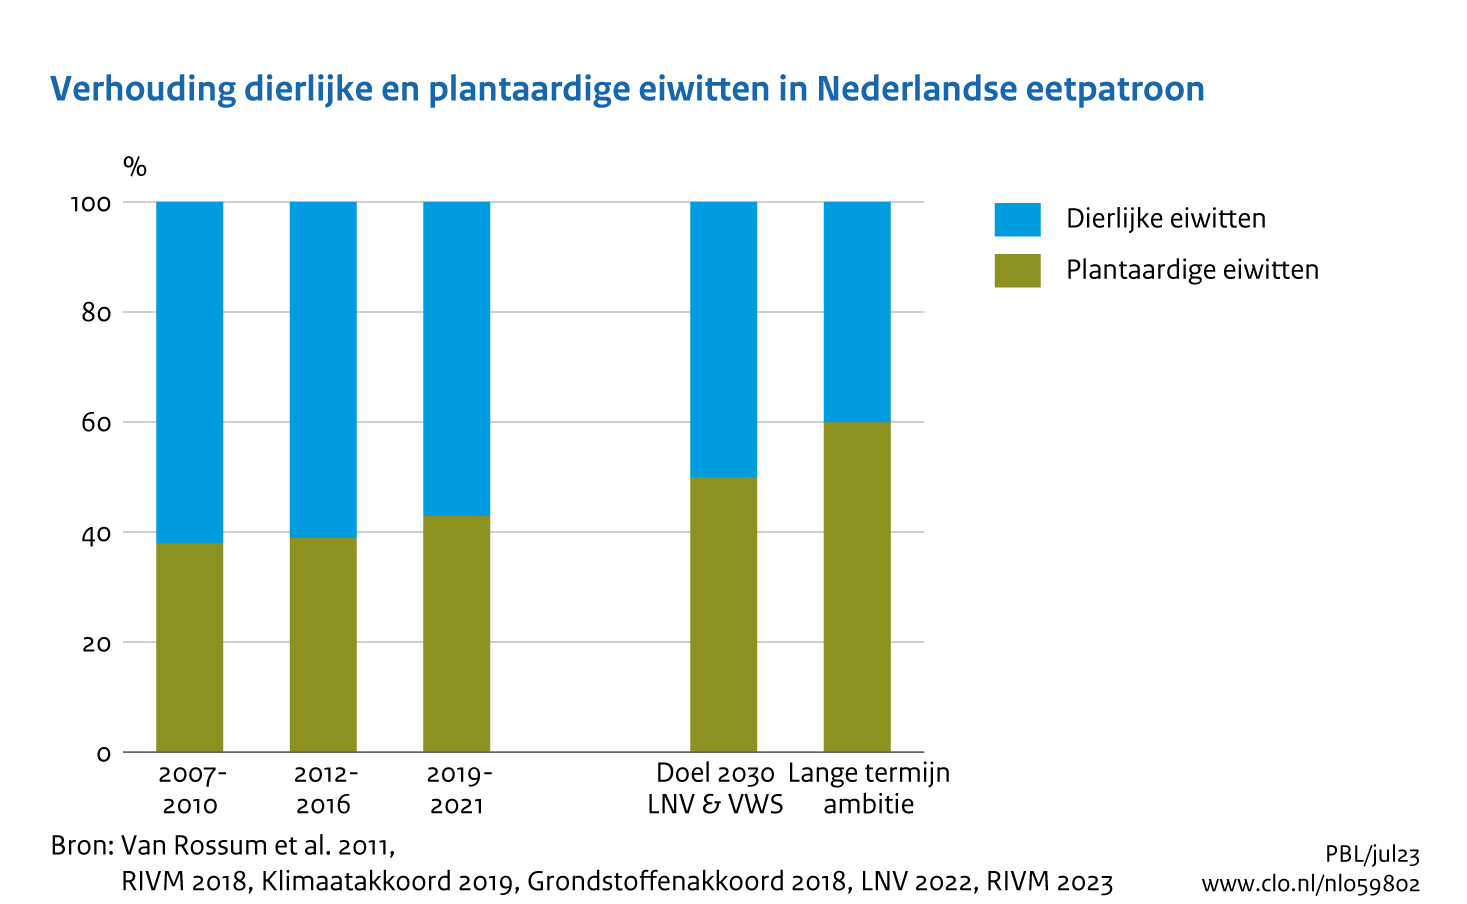 Figuur Verhouding dierlijke/plantaardige eiwitten in het Nederlandse eetpatroon. In de rest van de tekst wordt deze figuur uitgebreider uitgelegd.